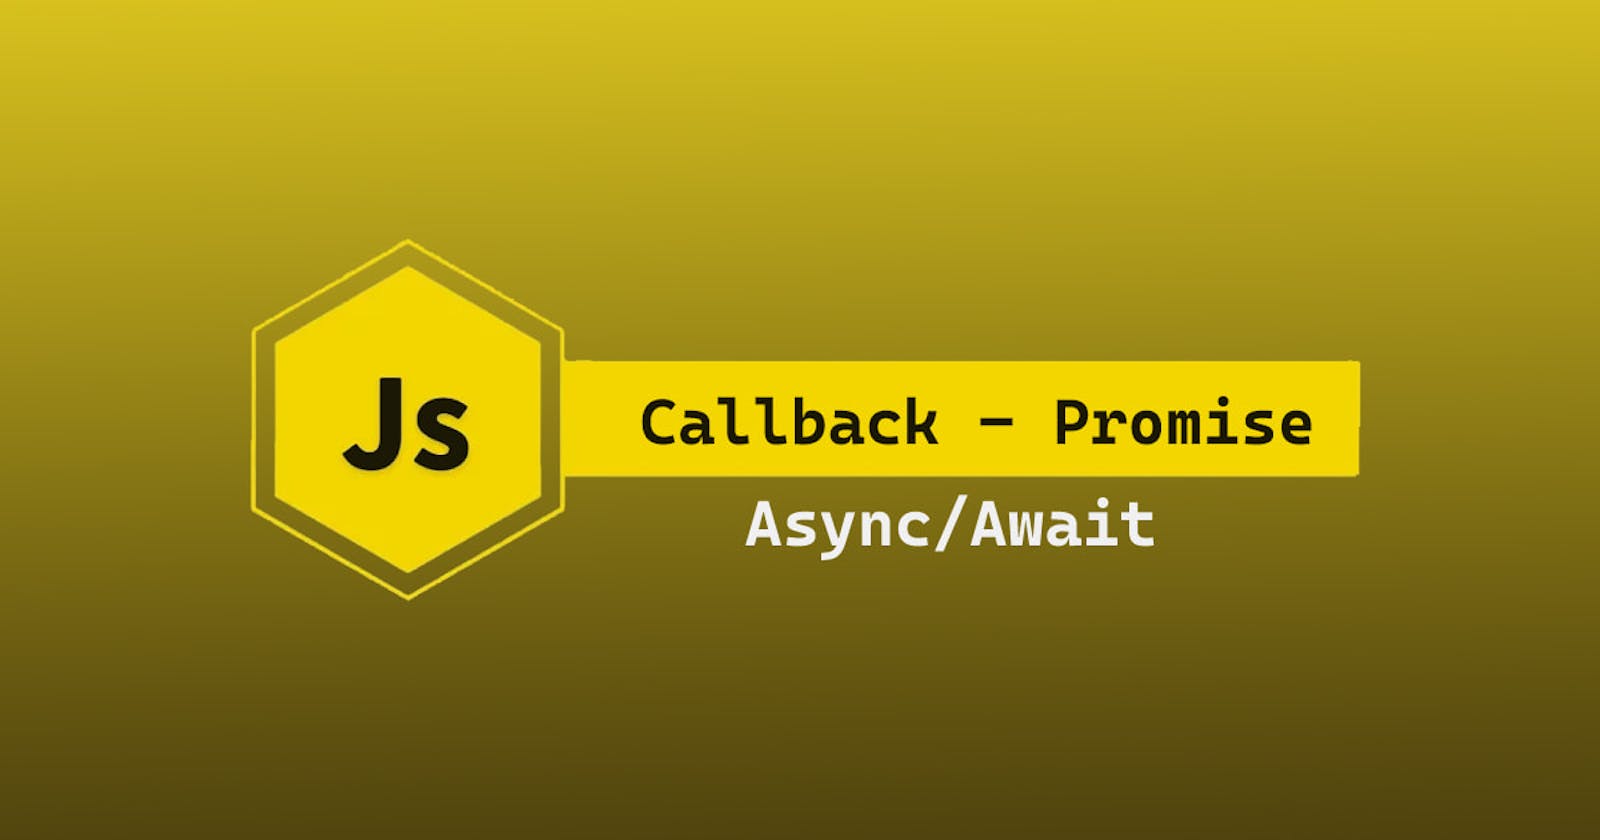 Callback vs Promises vs Async Await